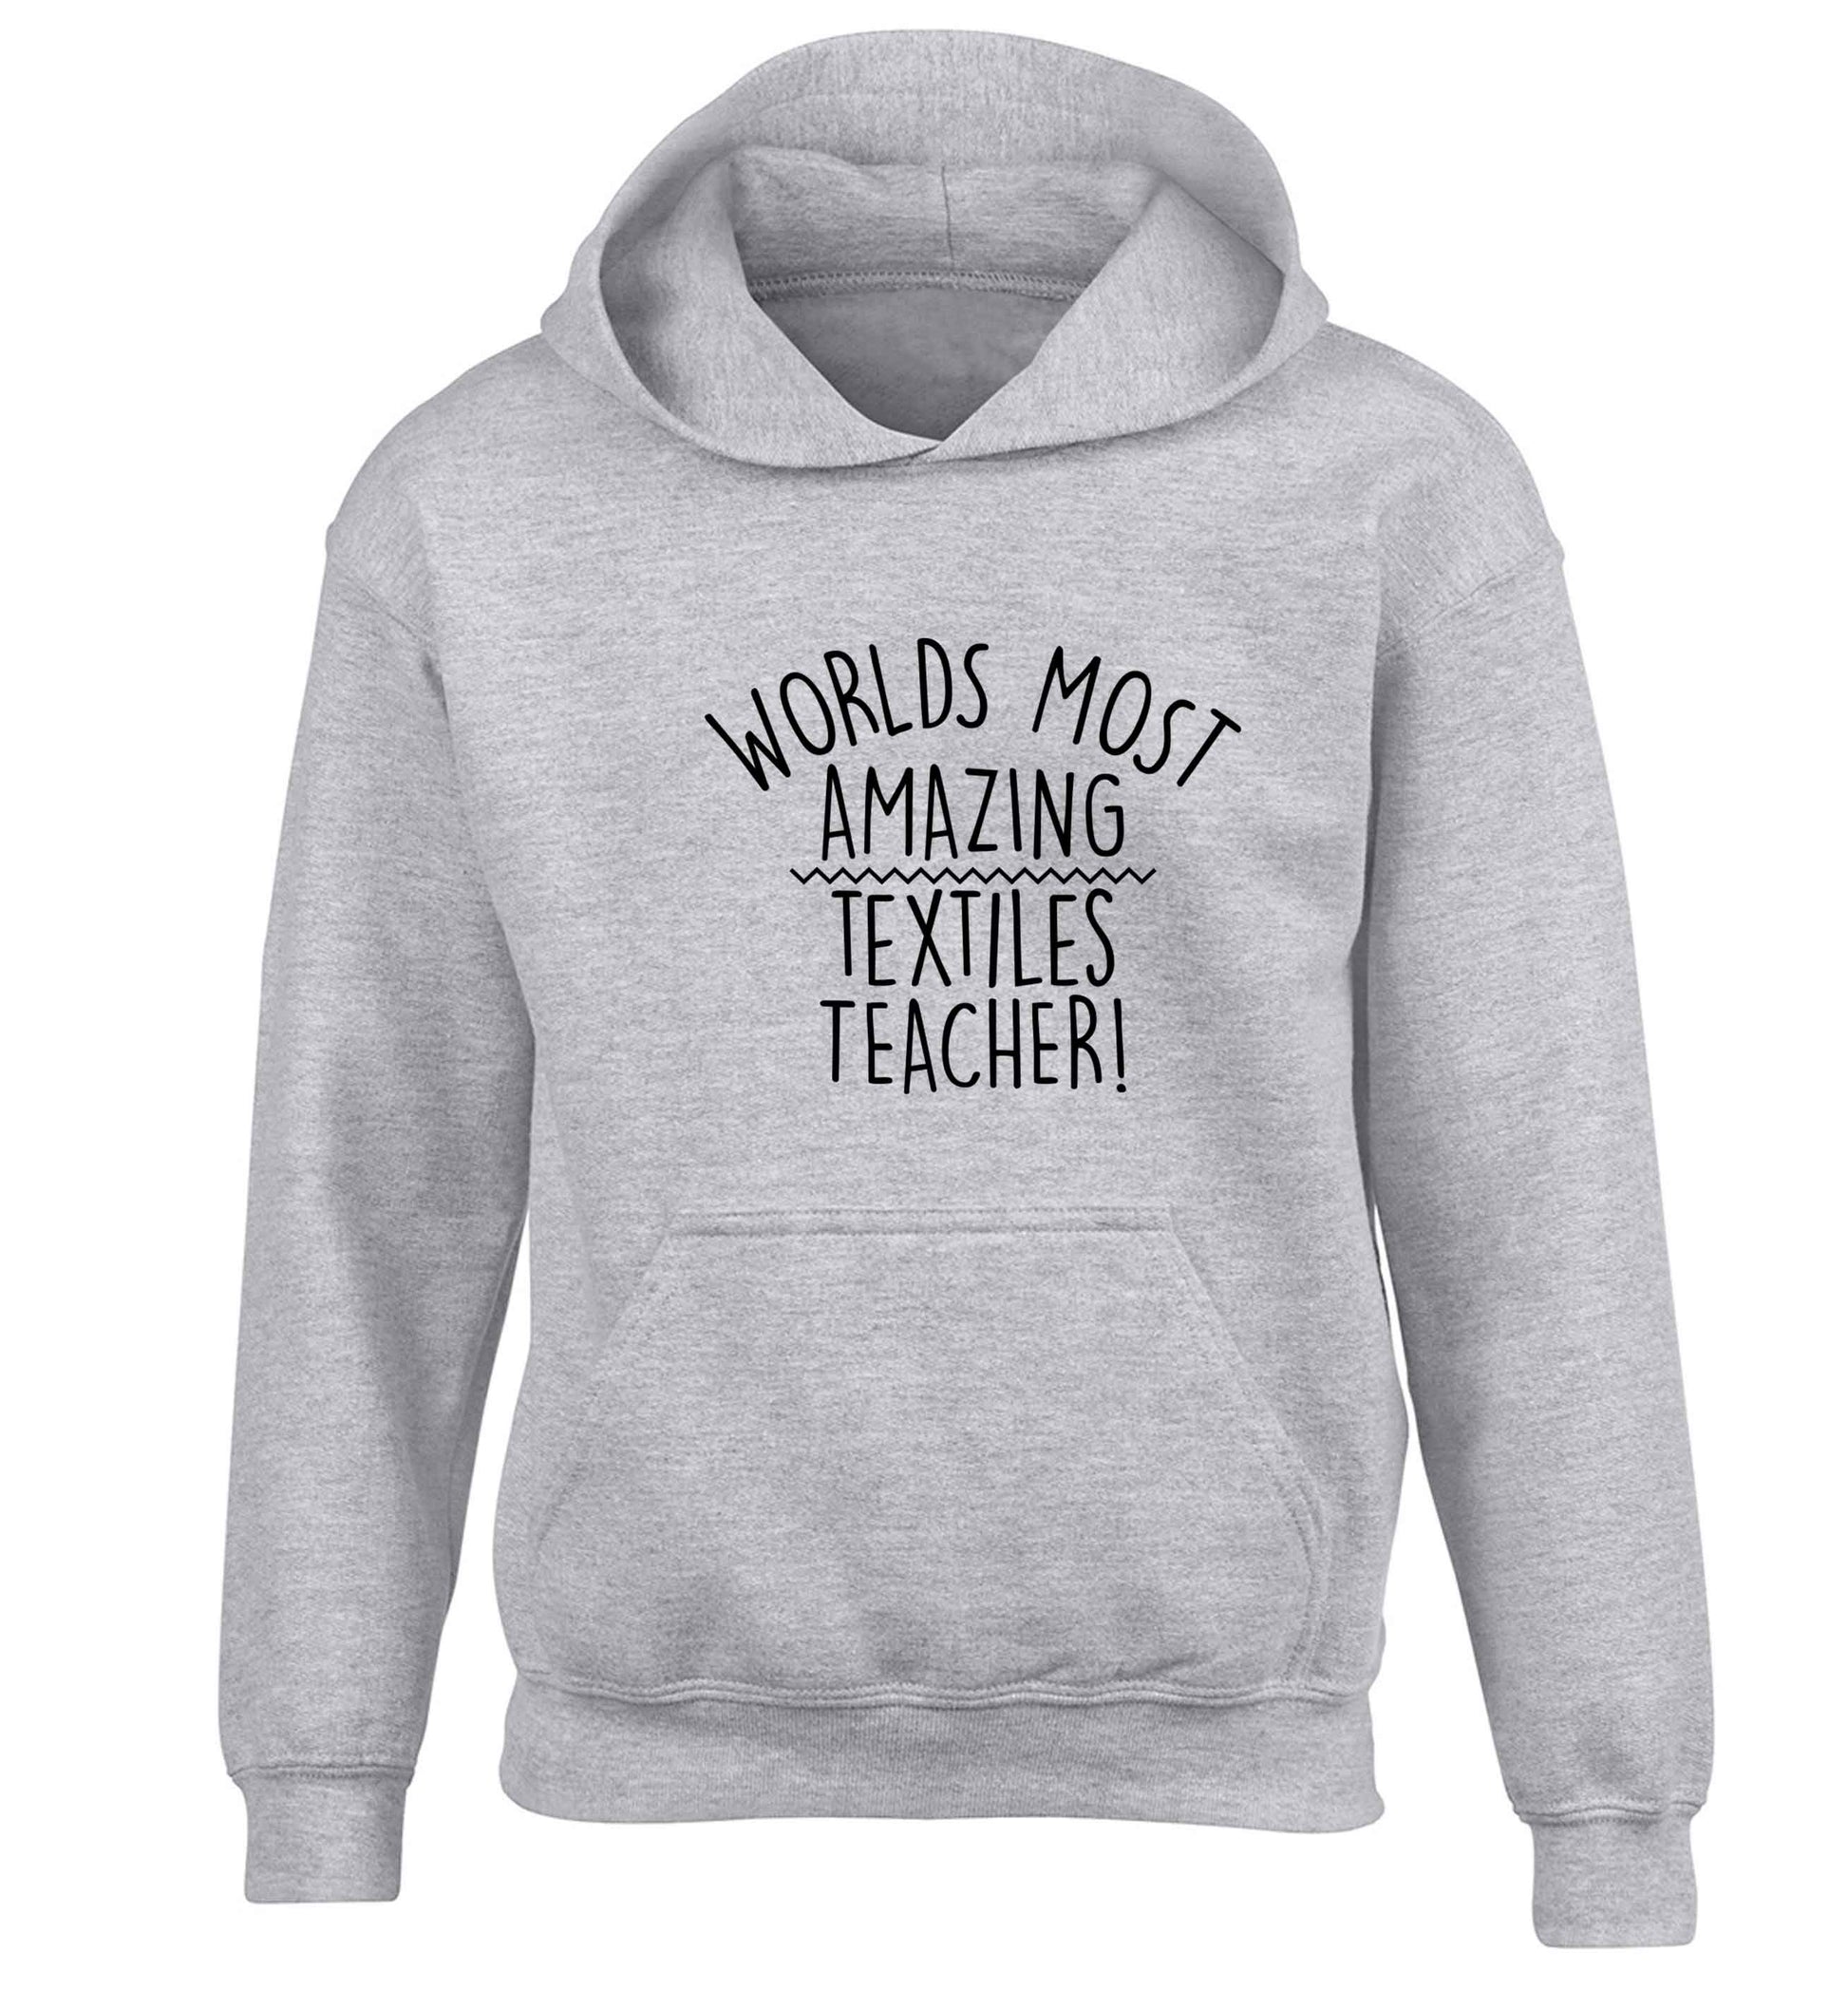 Worlds most amazing textiles teacher children's grey hoodie 12-13 Years